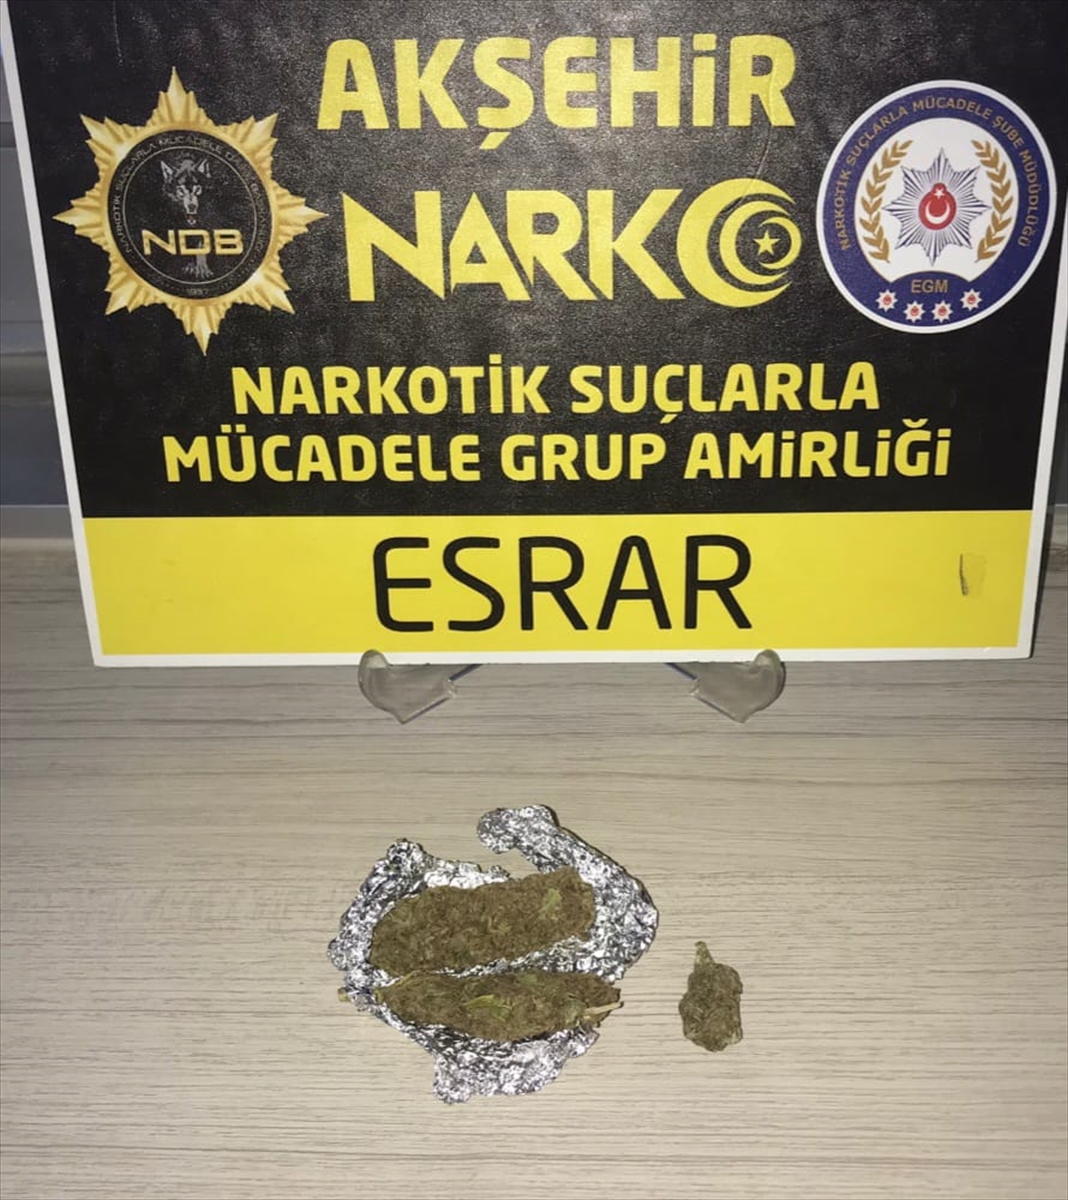 Konya'da uyuşturucu ticareti yaptıkları iddiasıyla 2 zanlı tutuklandı